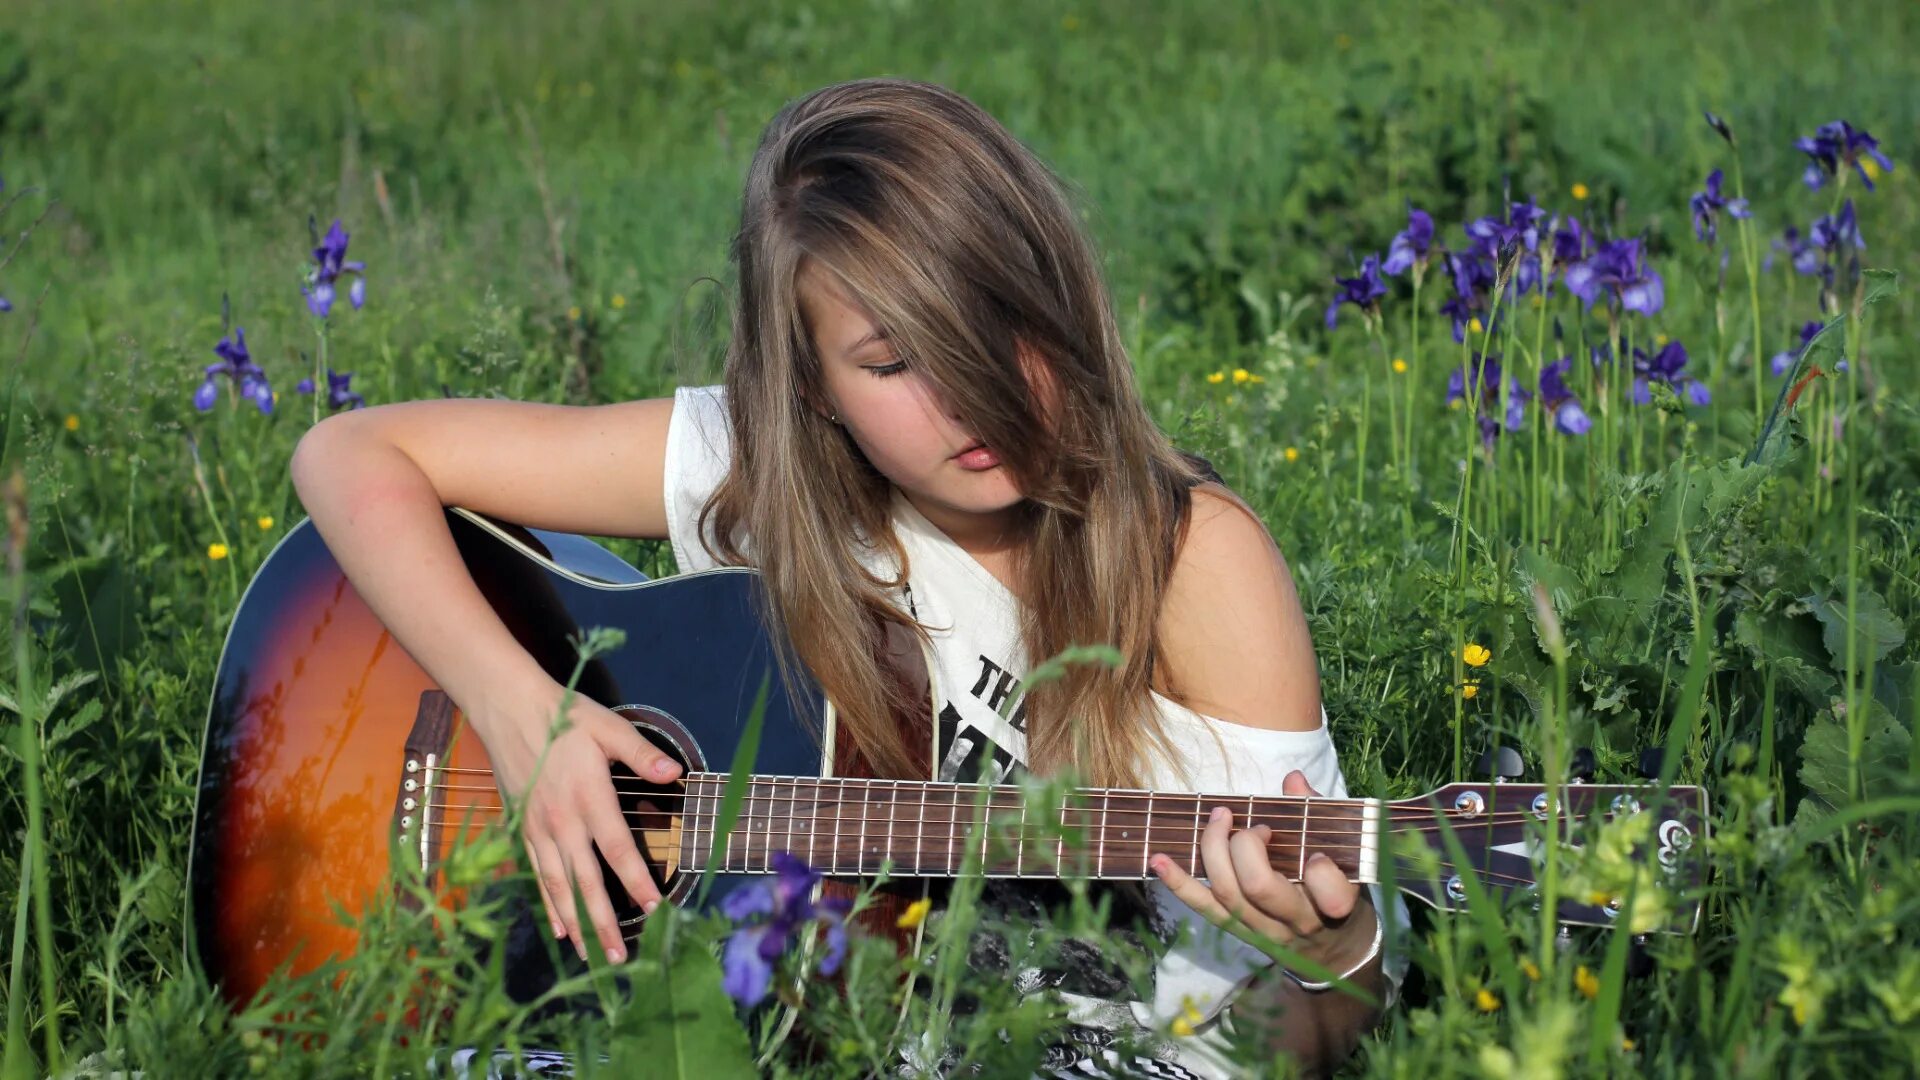 Песня пою как умею. Фотосессия с гитарой на природе. Девочка. Девушка с гитарой на природе. Девочки подростки на природе.